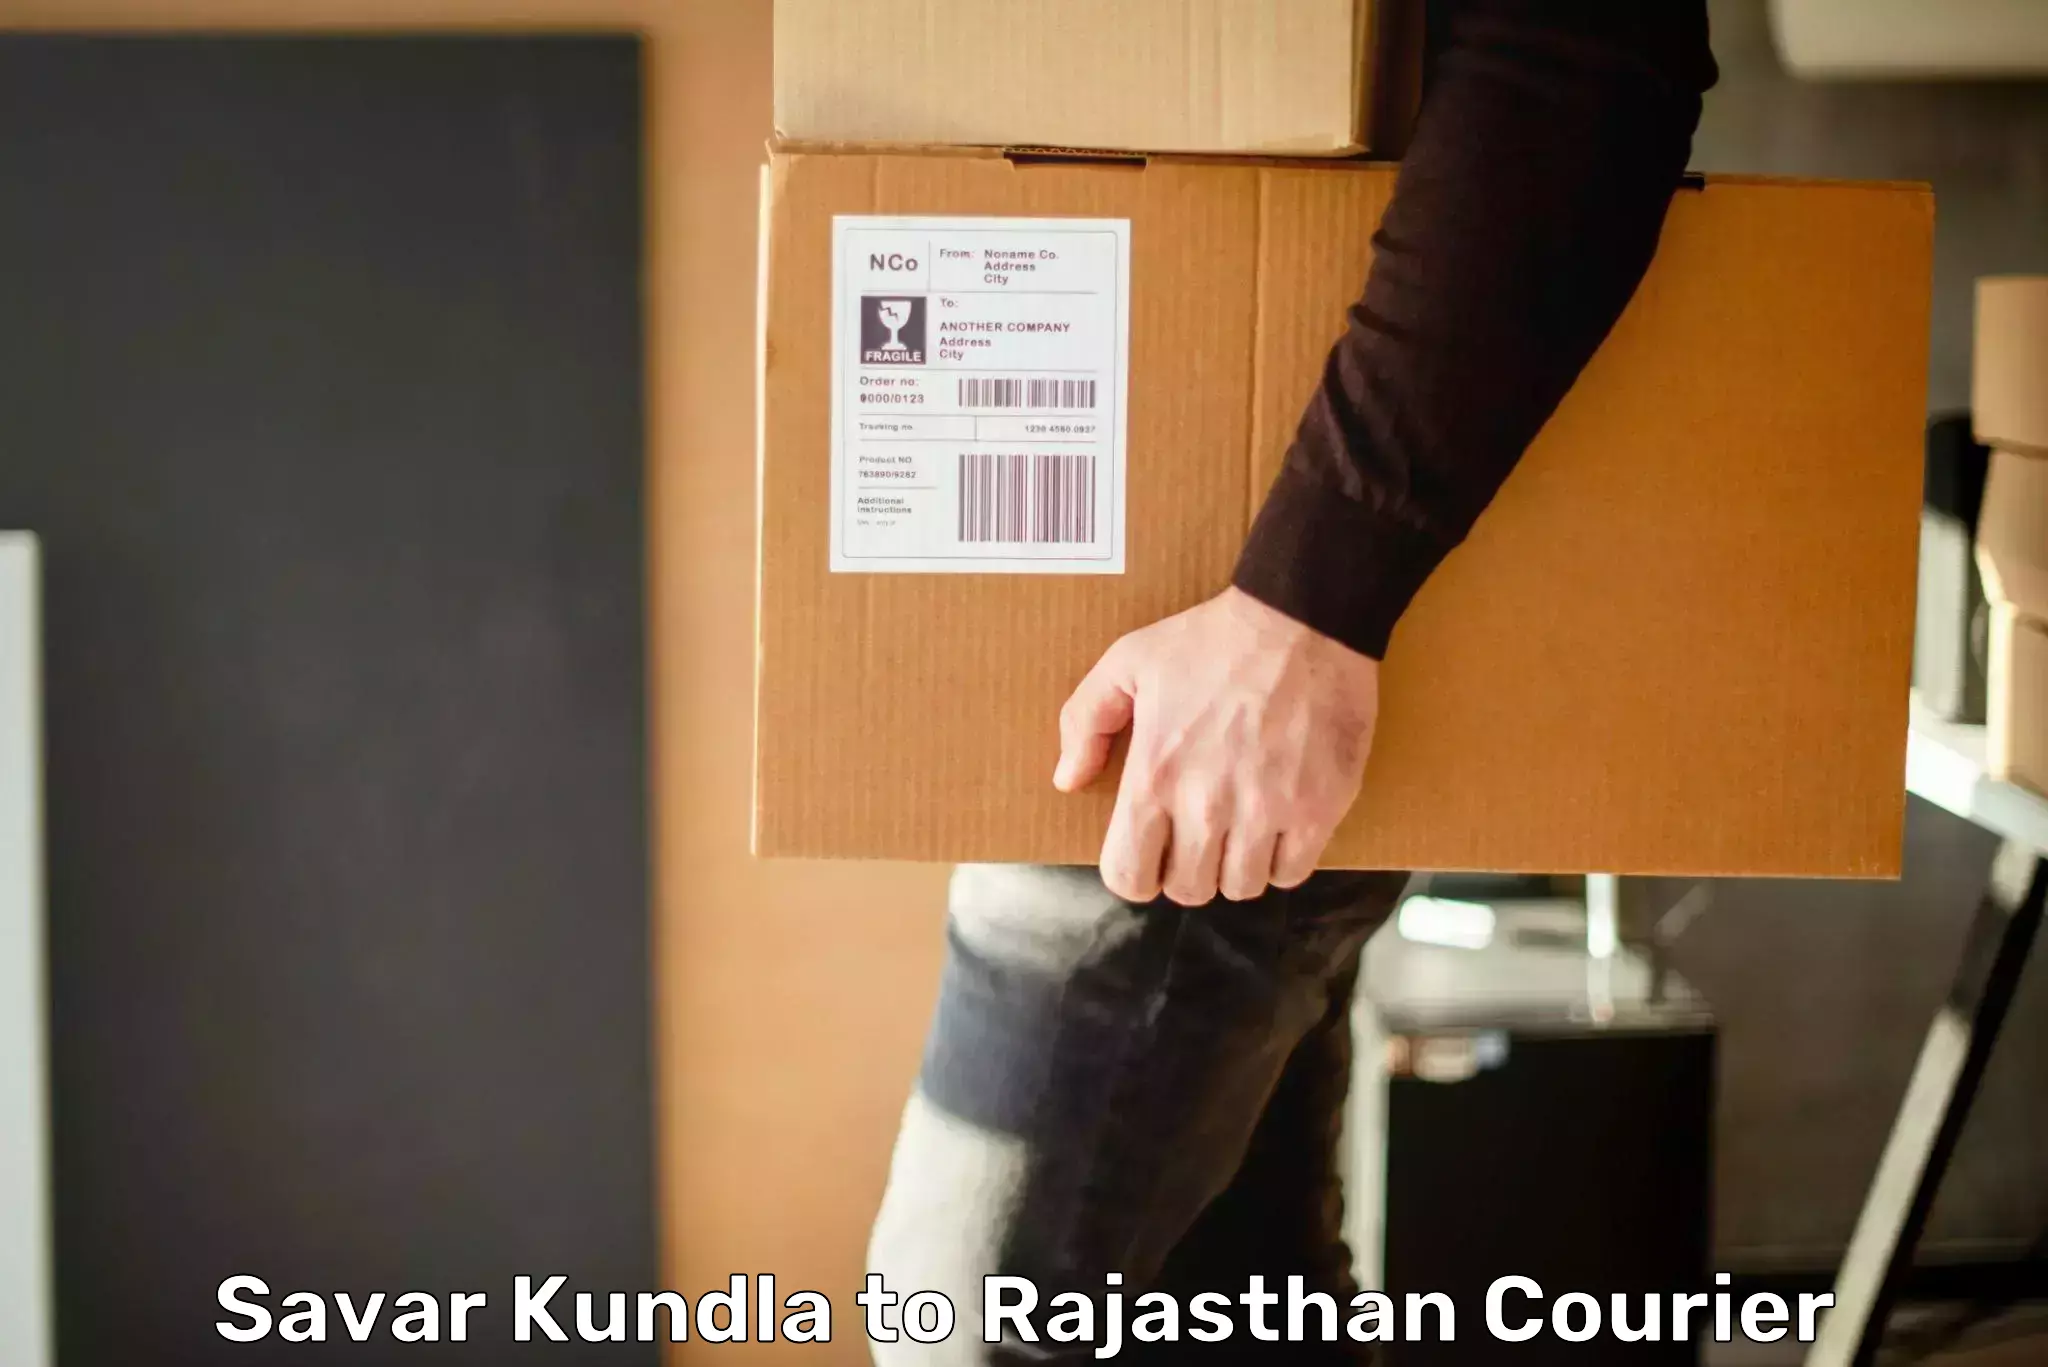 Door-to-door freight service Savar Kundla to Rajasthan